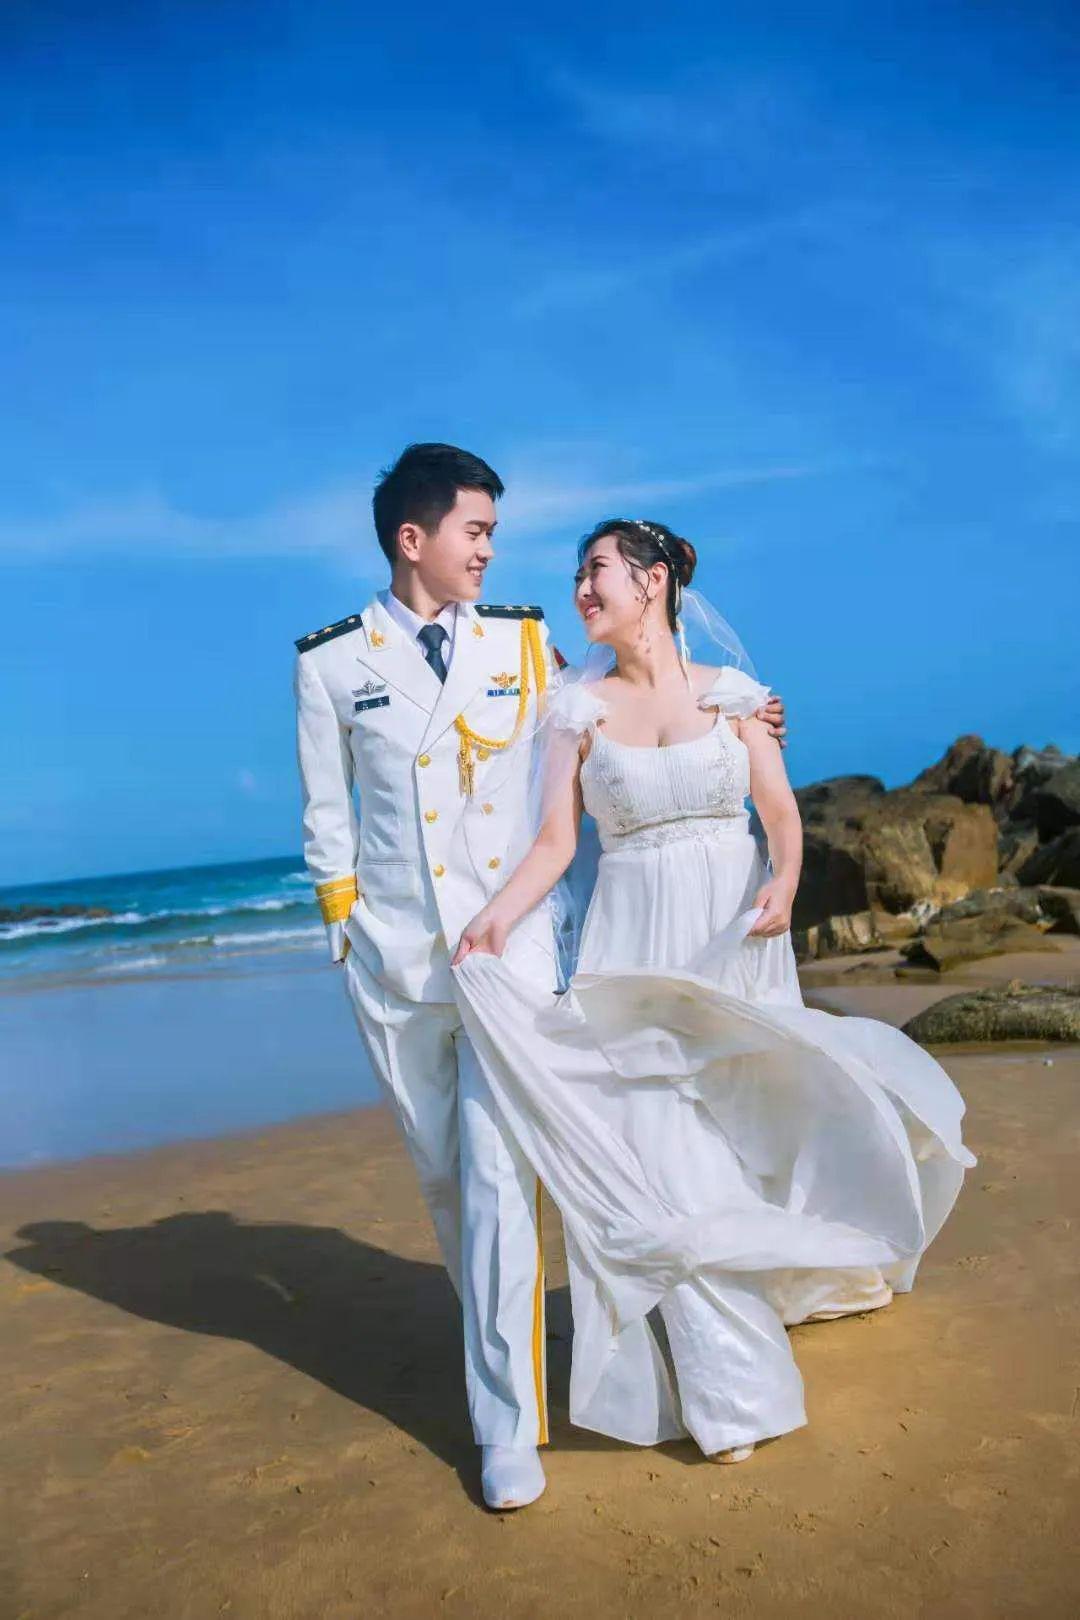 海军礼服 结婚照图片